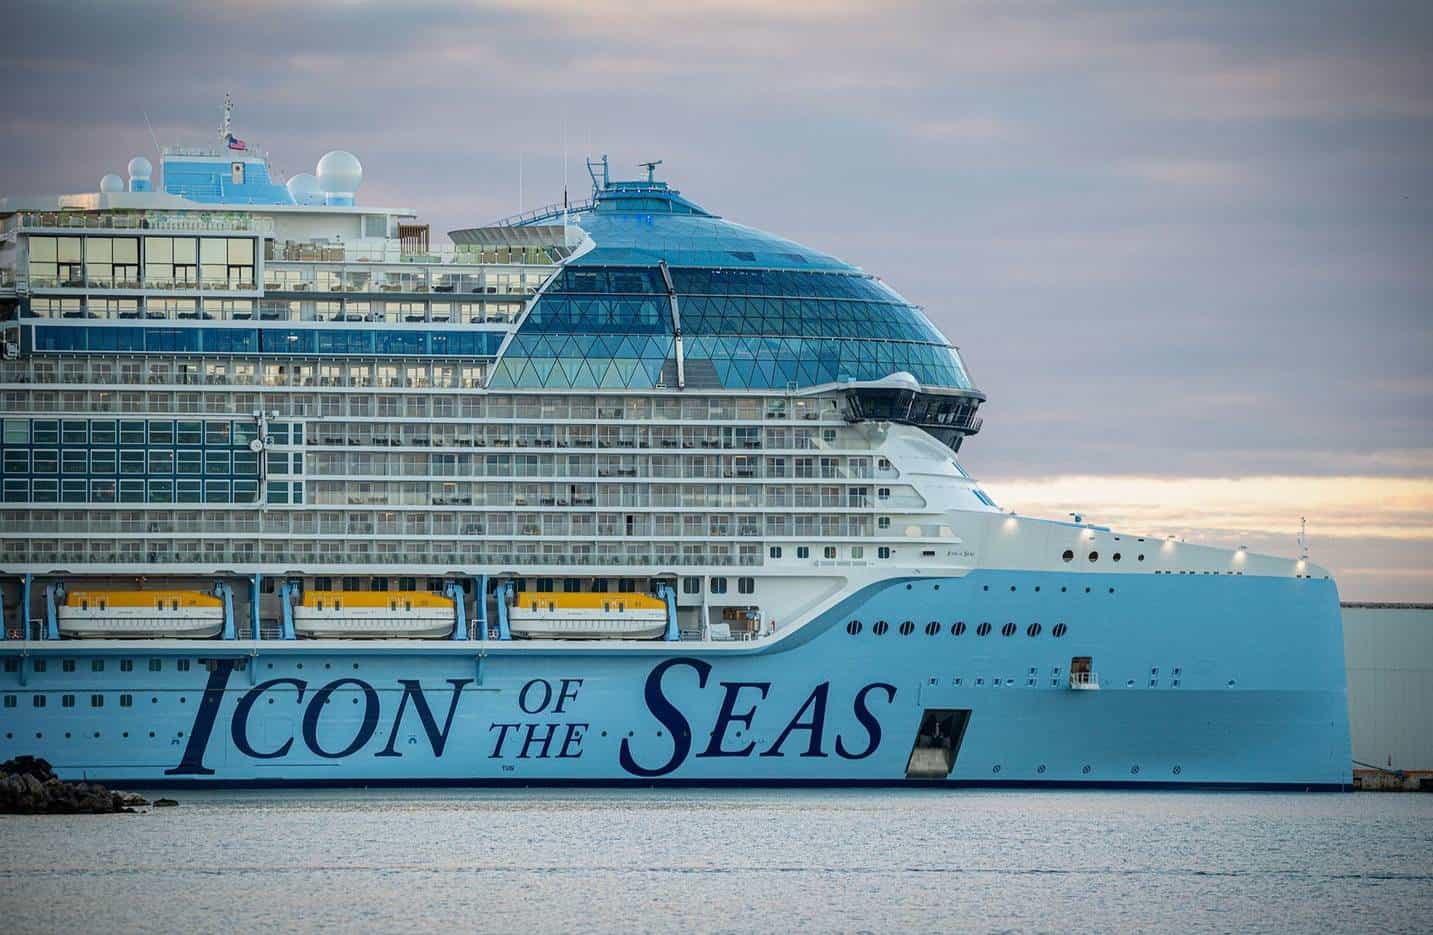 Llega a Miami para su inauguración, el "Icon of the seas", el mayor crucero  del mundo